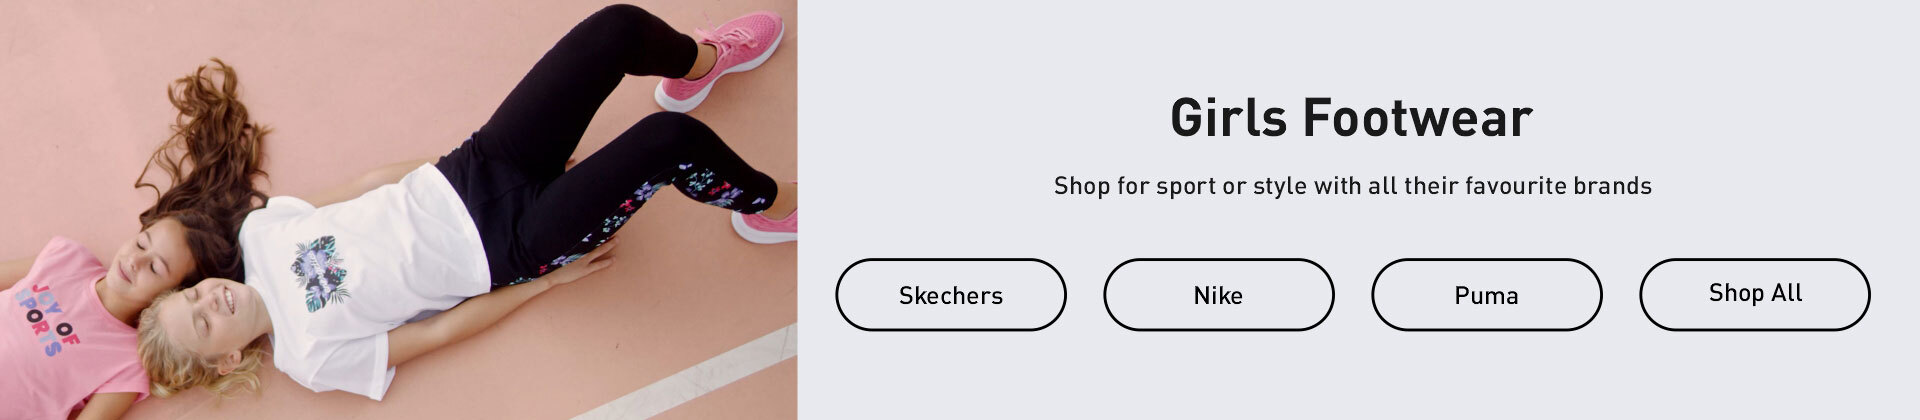 Shop the latest in Girls Footwear